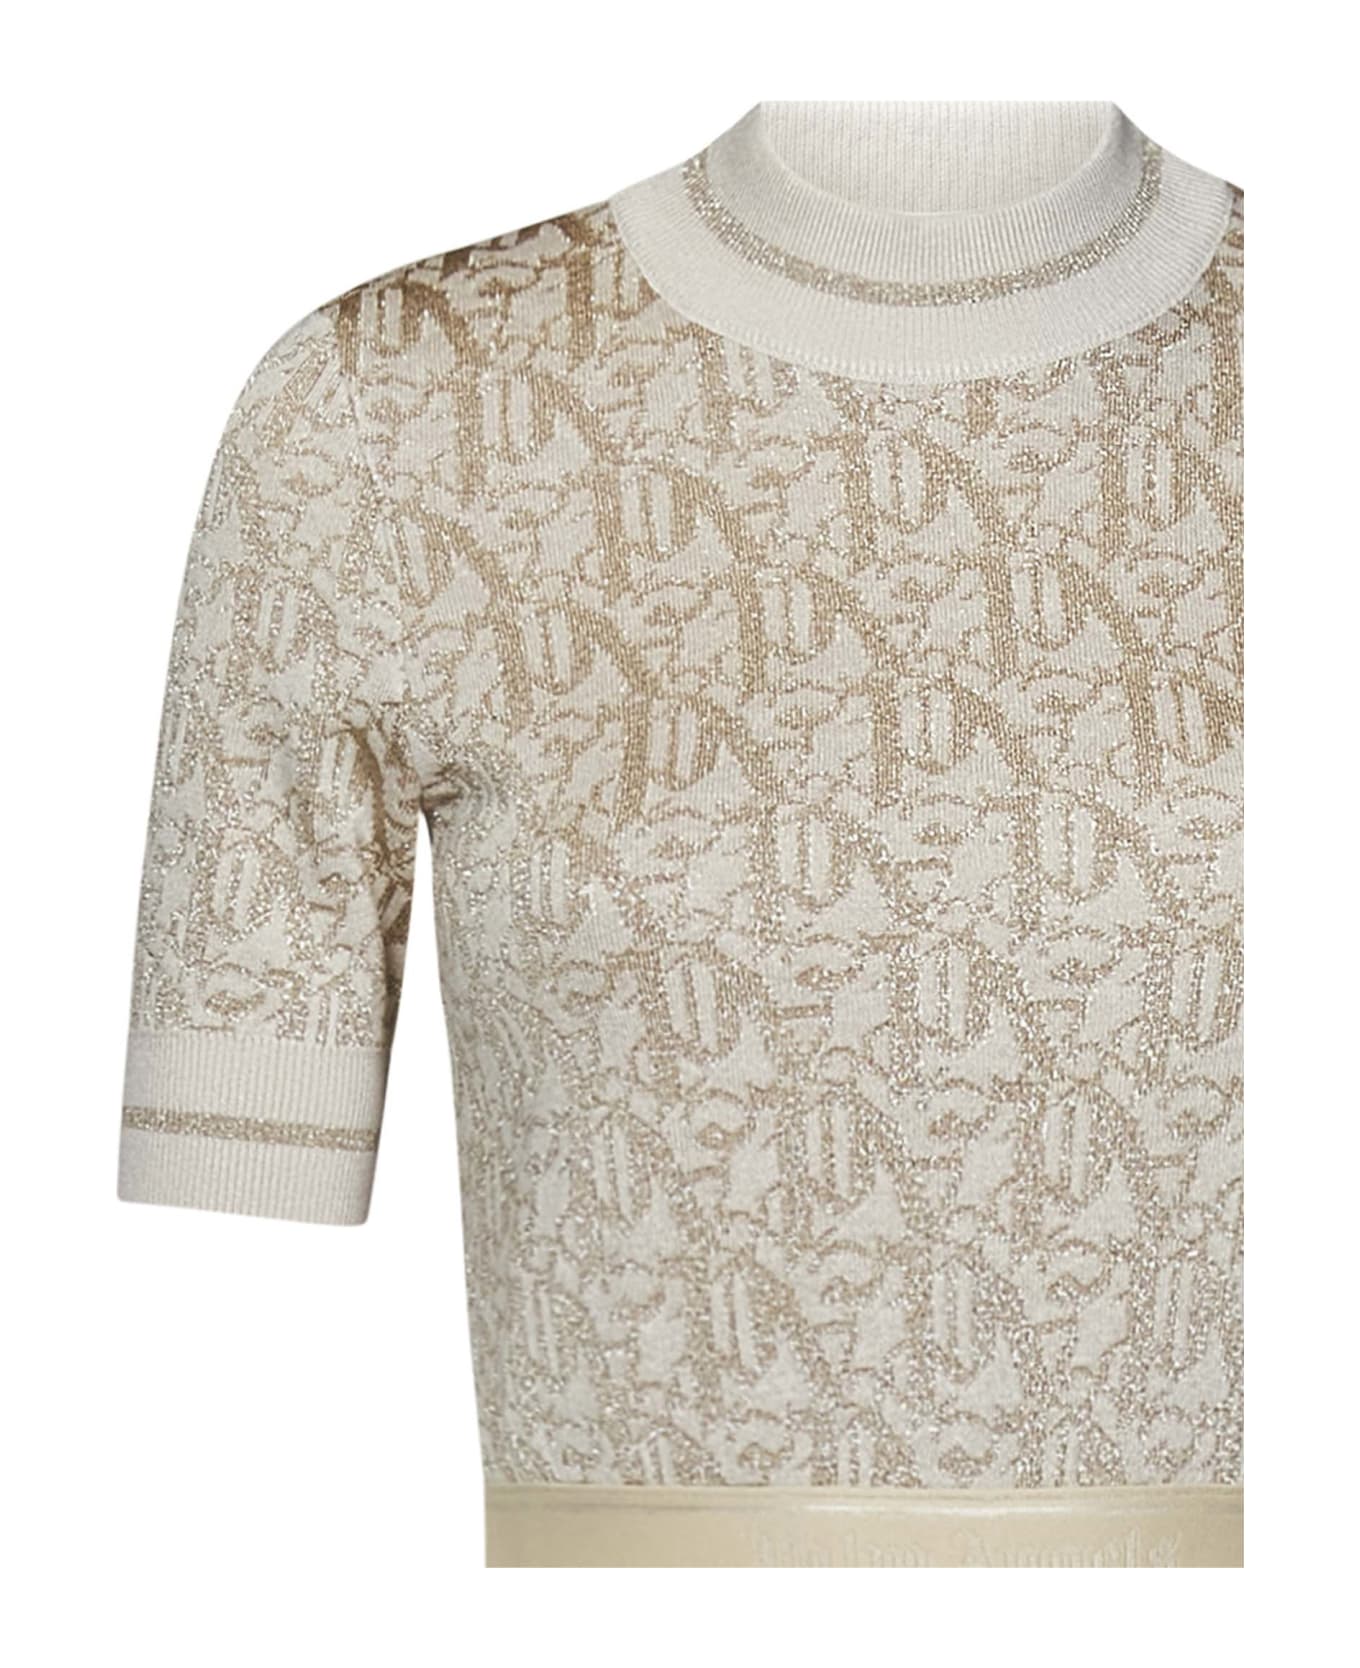 Palm Angels Monogram Sweater - Beige